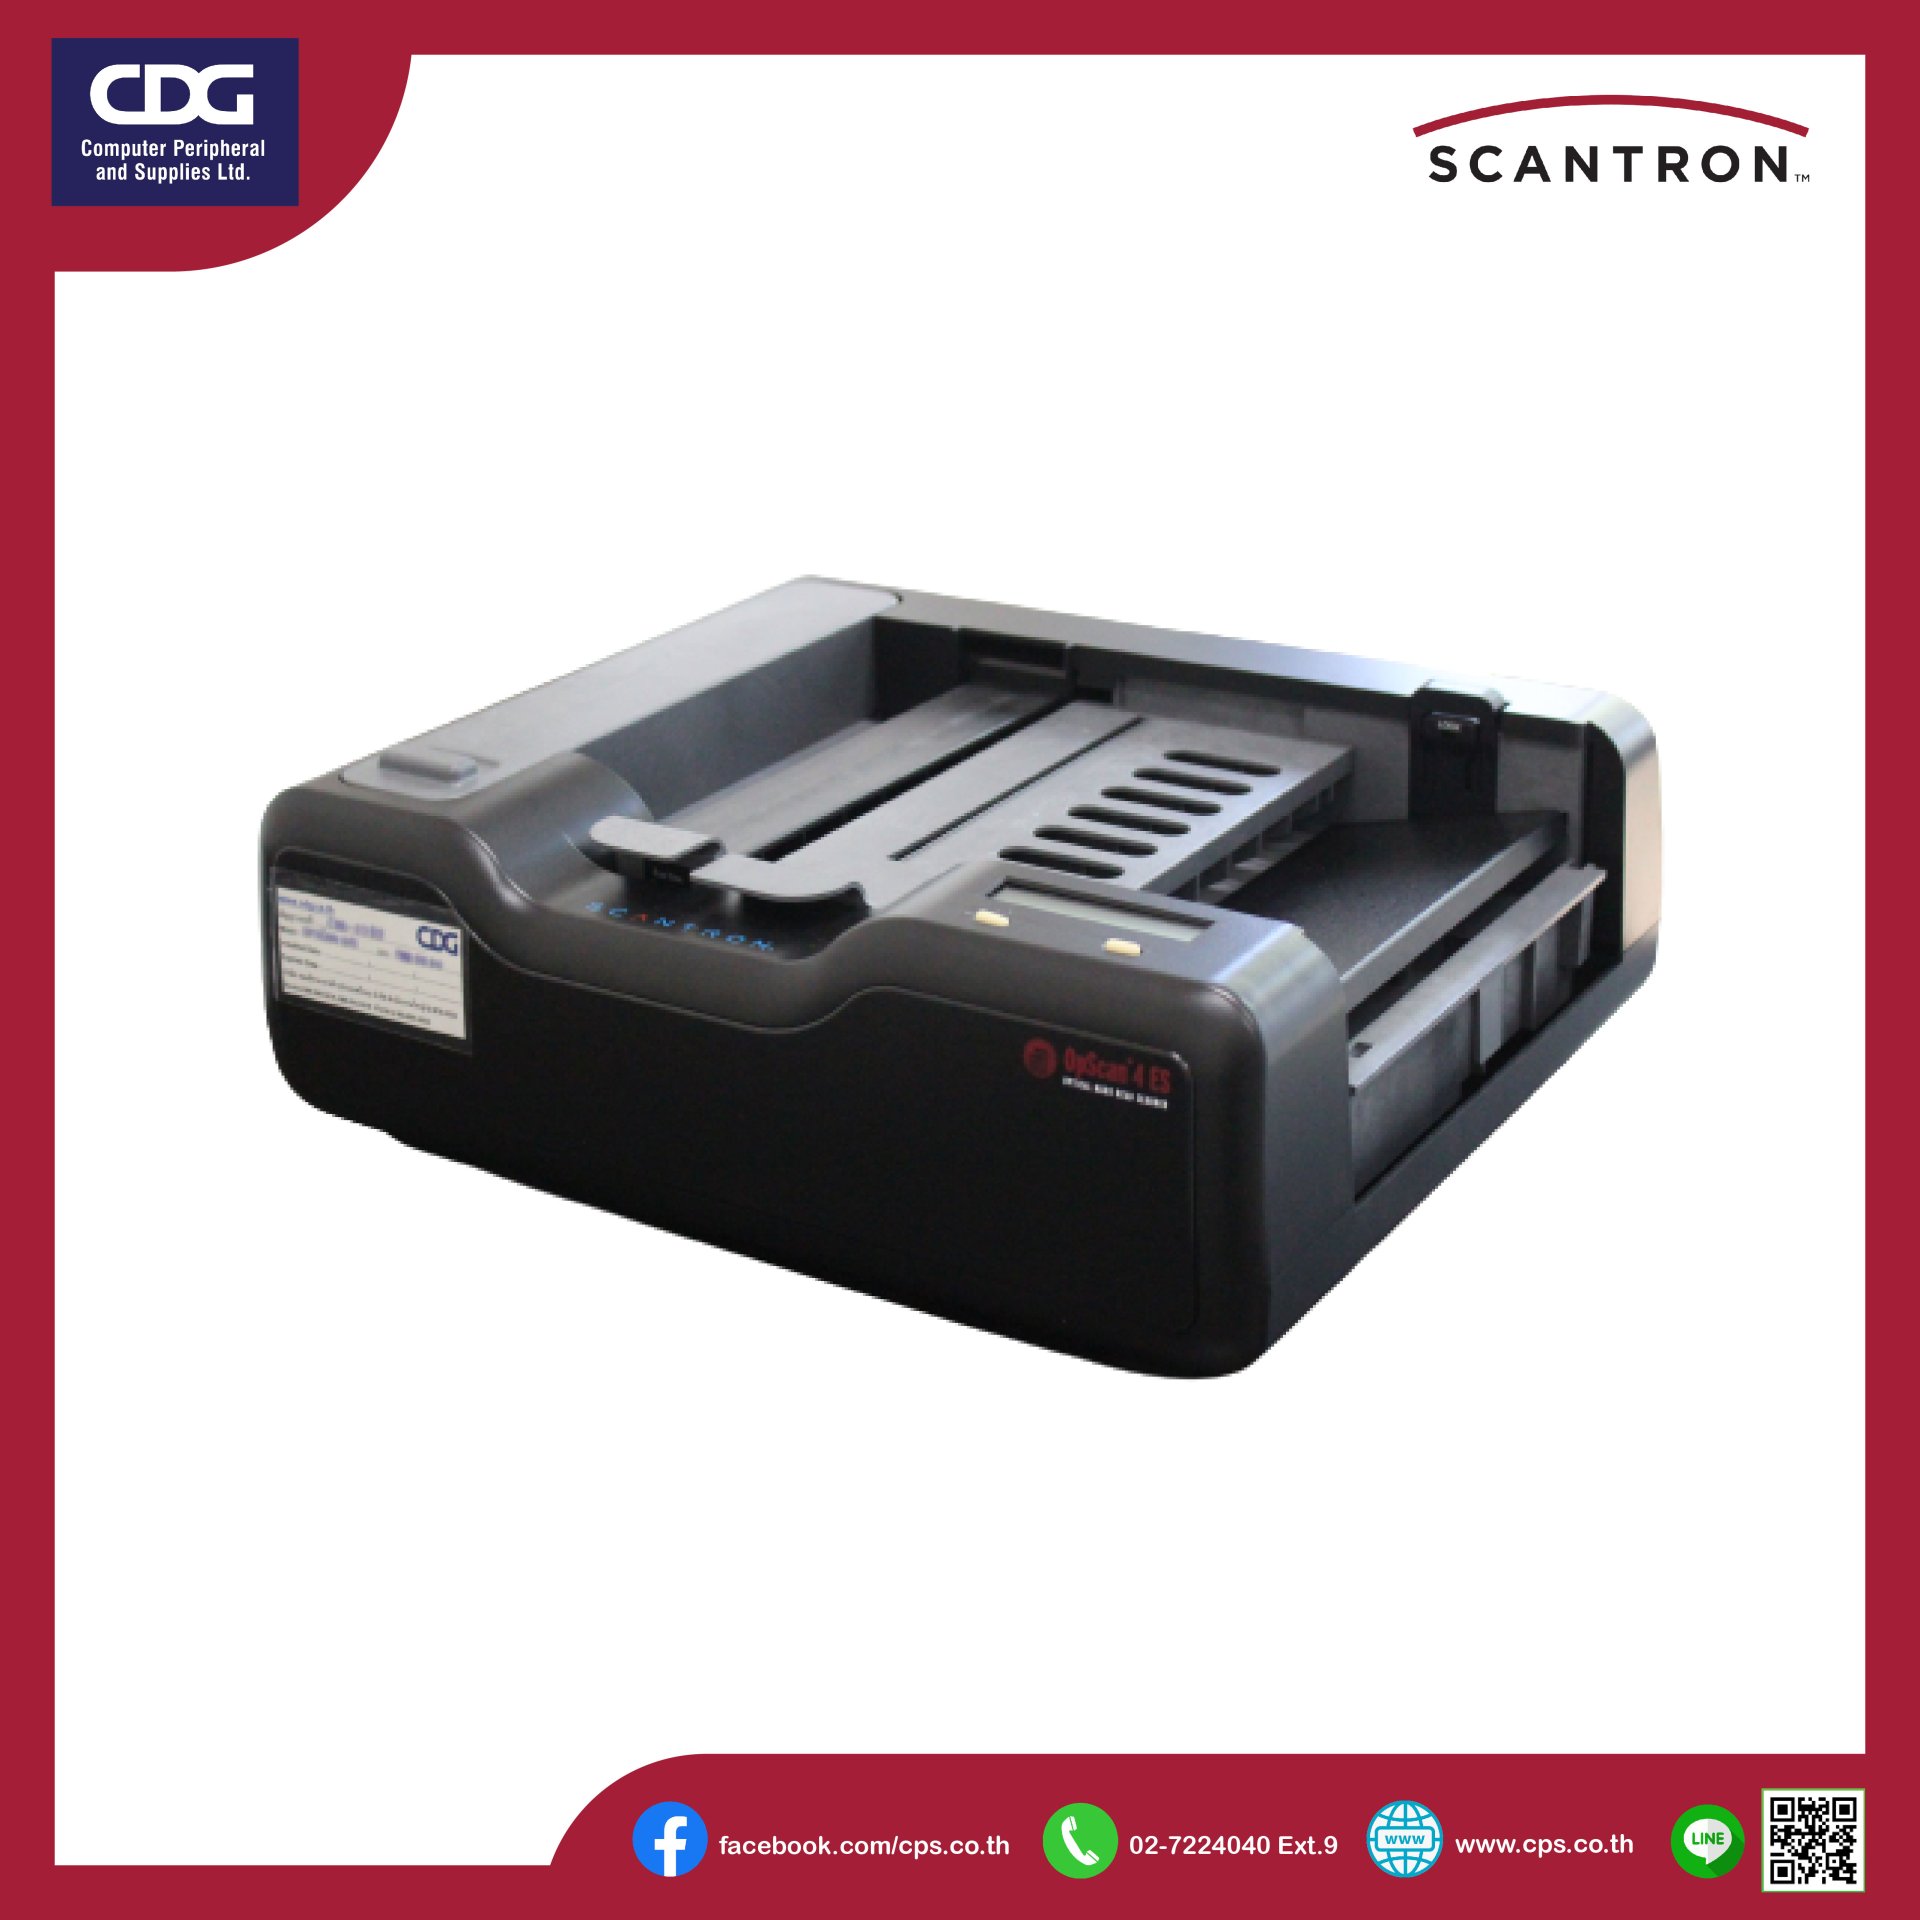 OpScan® 4ES OMR Scanner